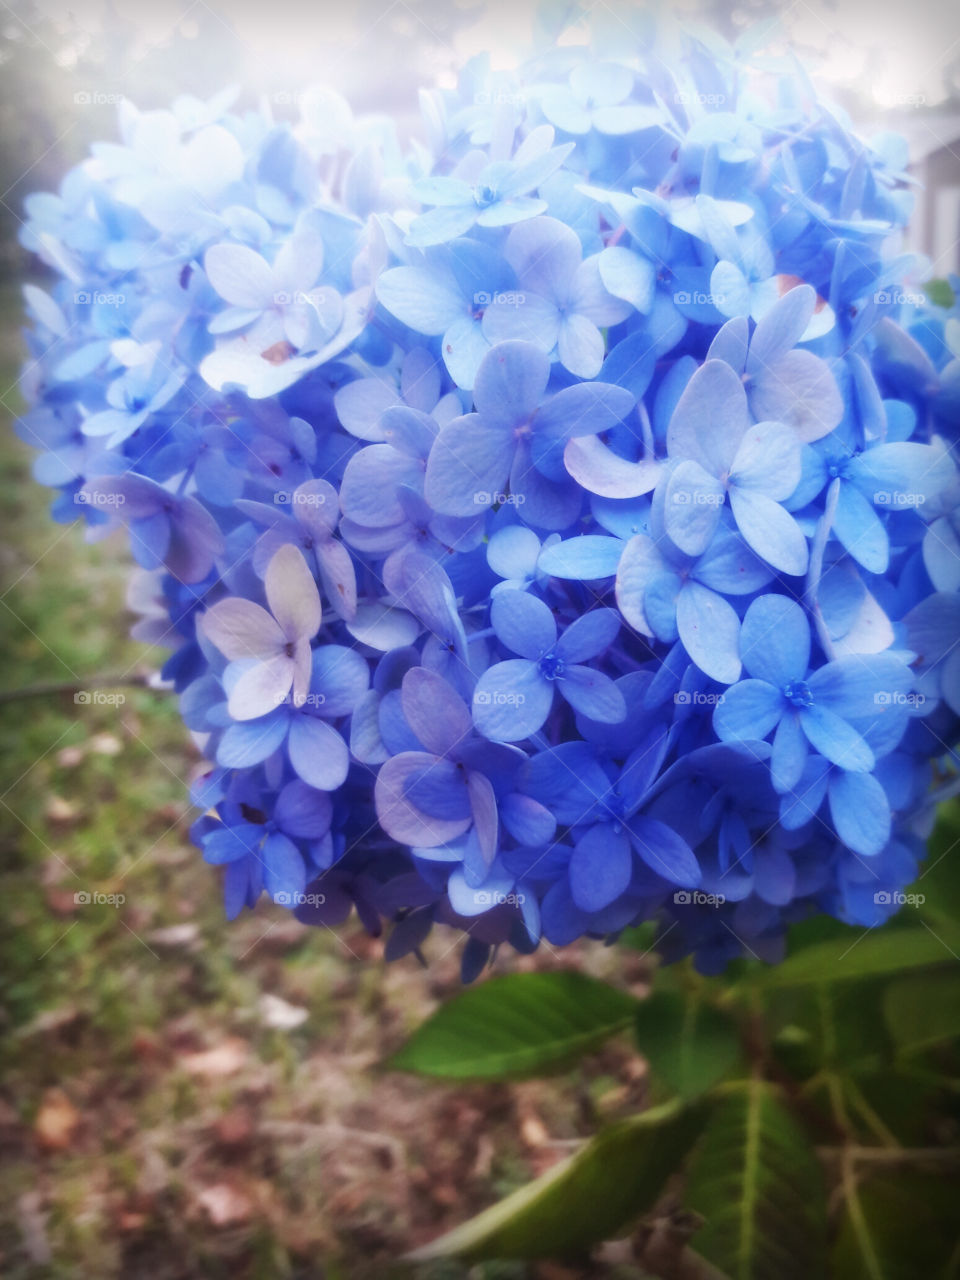 soft blue petals